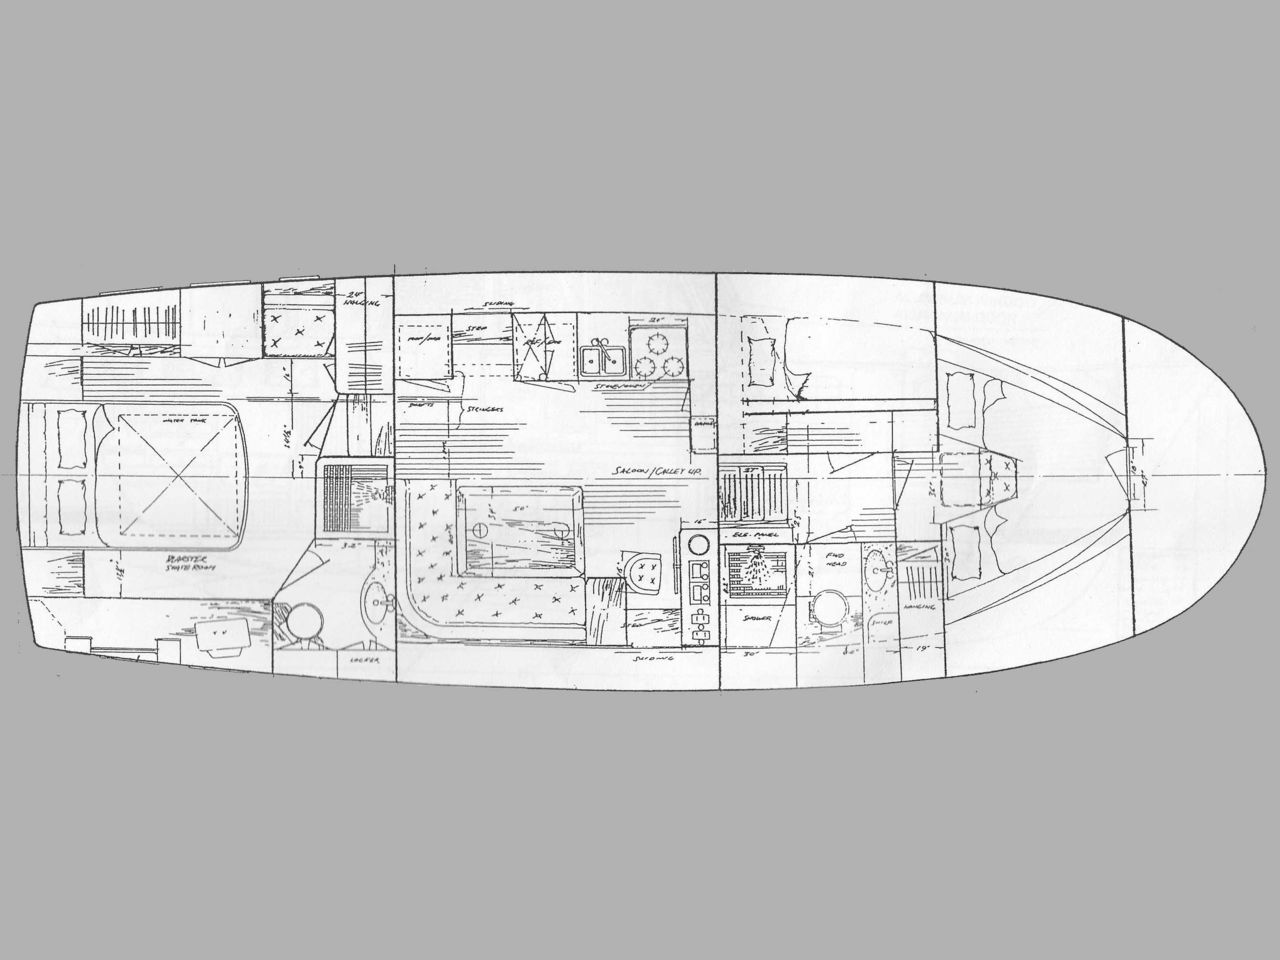 CA-Yachts Classic Adria Trawler - zdjęcie 3